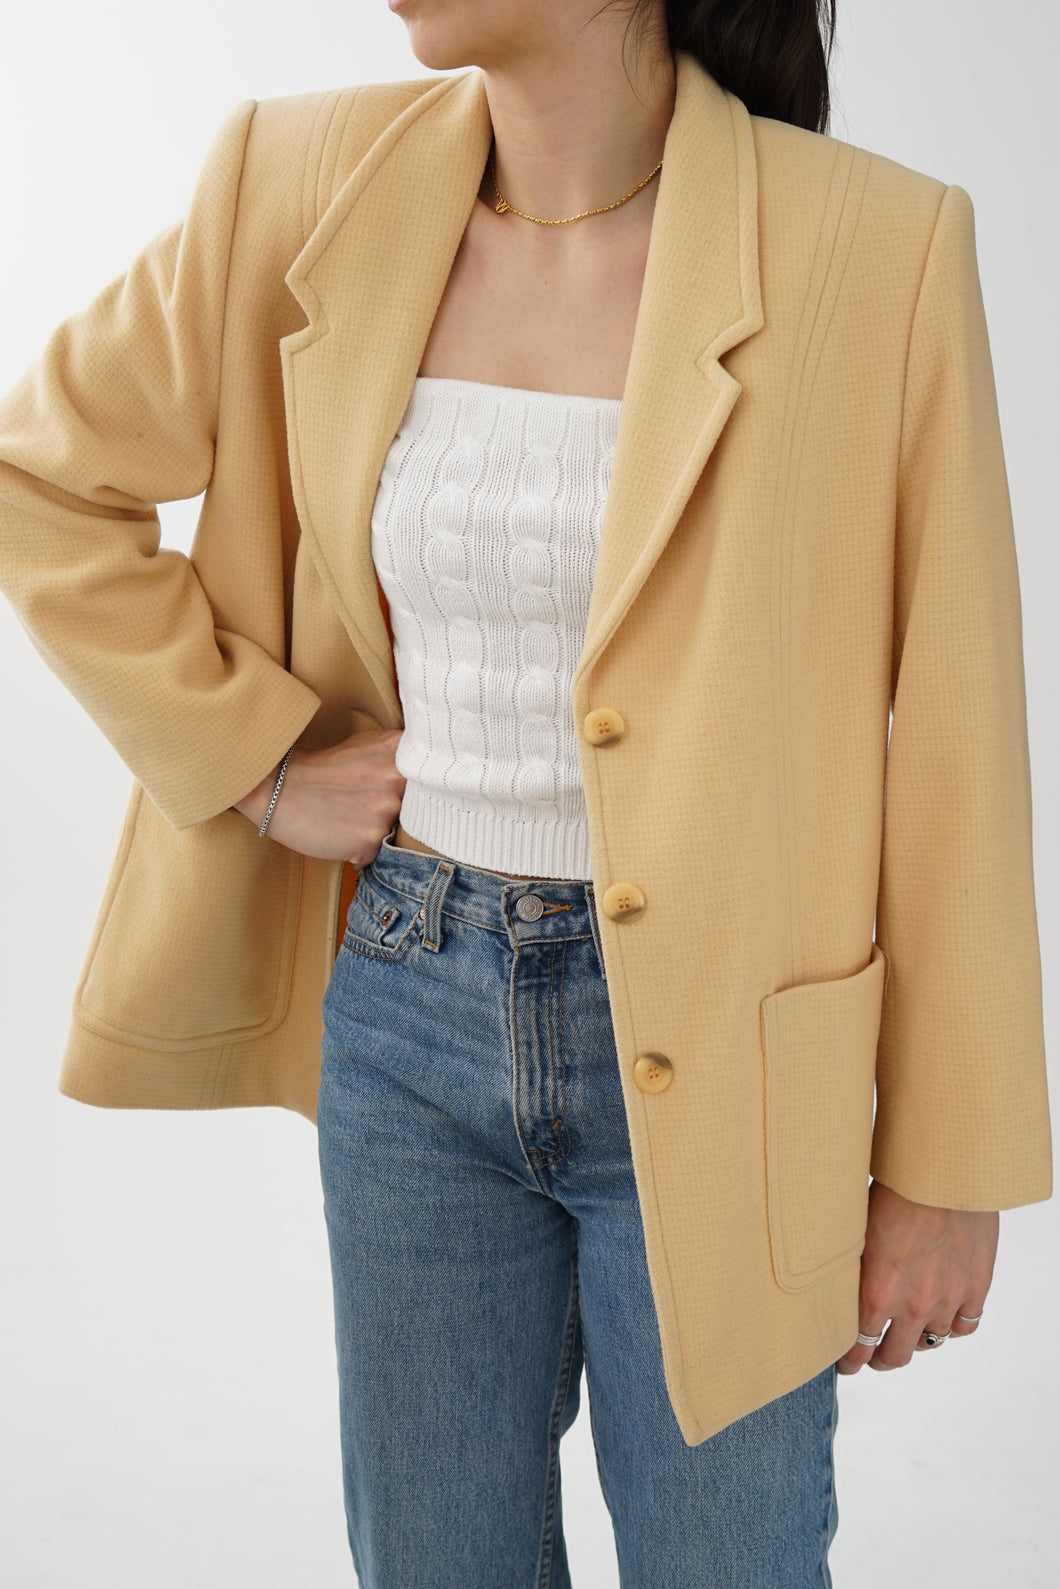 Veston beige vintage fait au Canada pour femme taille 12 (M)